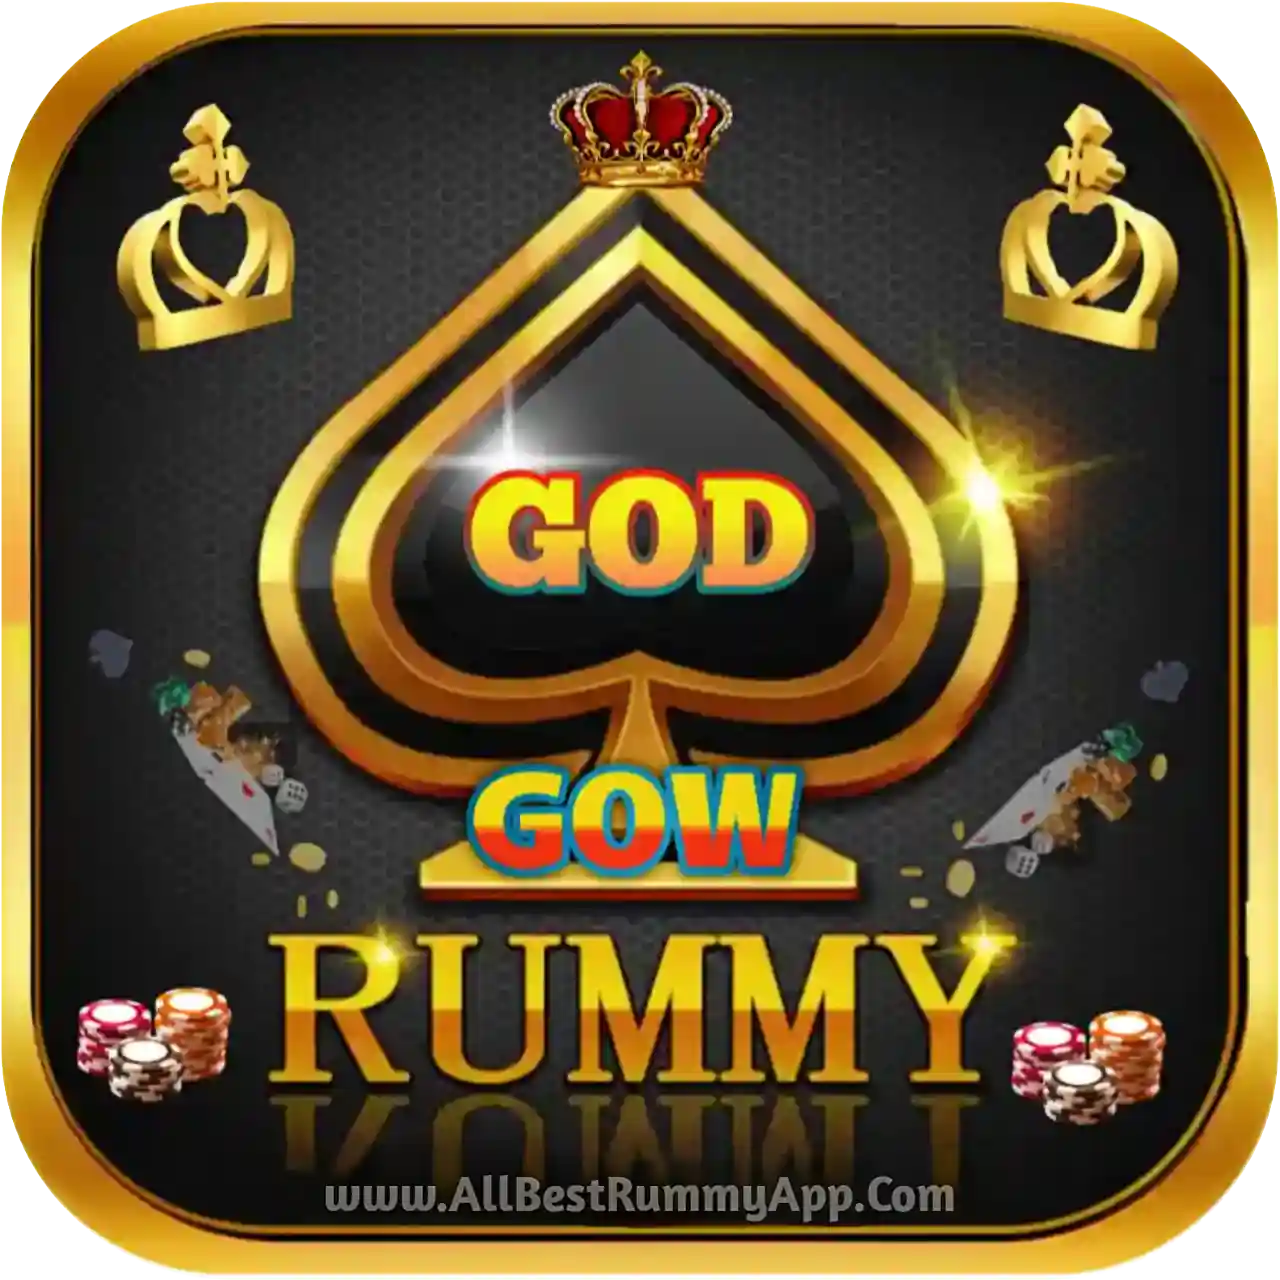 God Cow Rummy Logo - All Best Rummy App